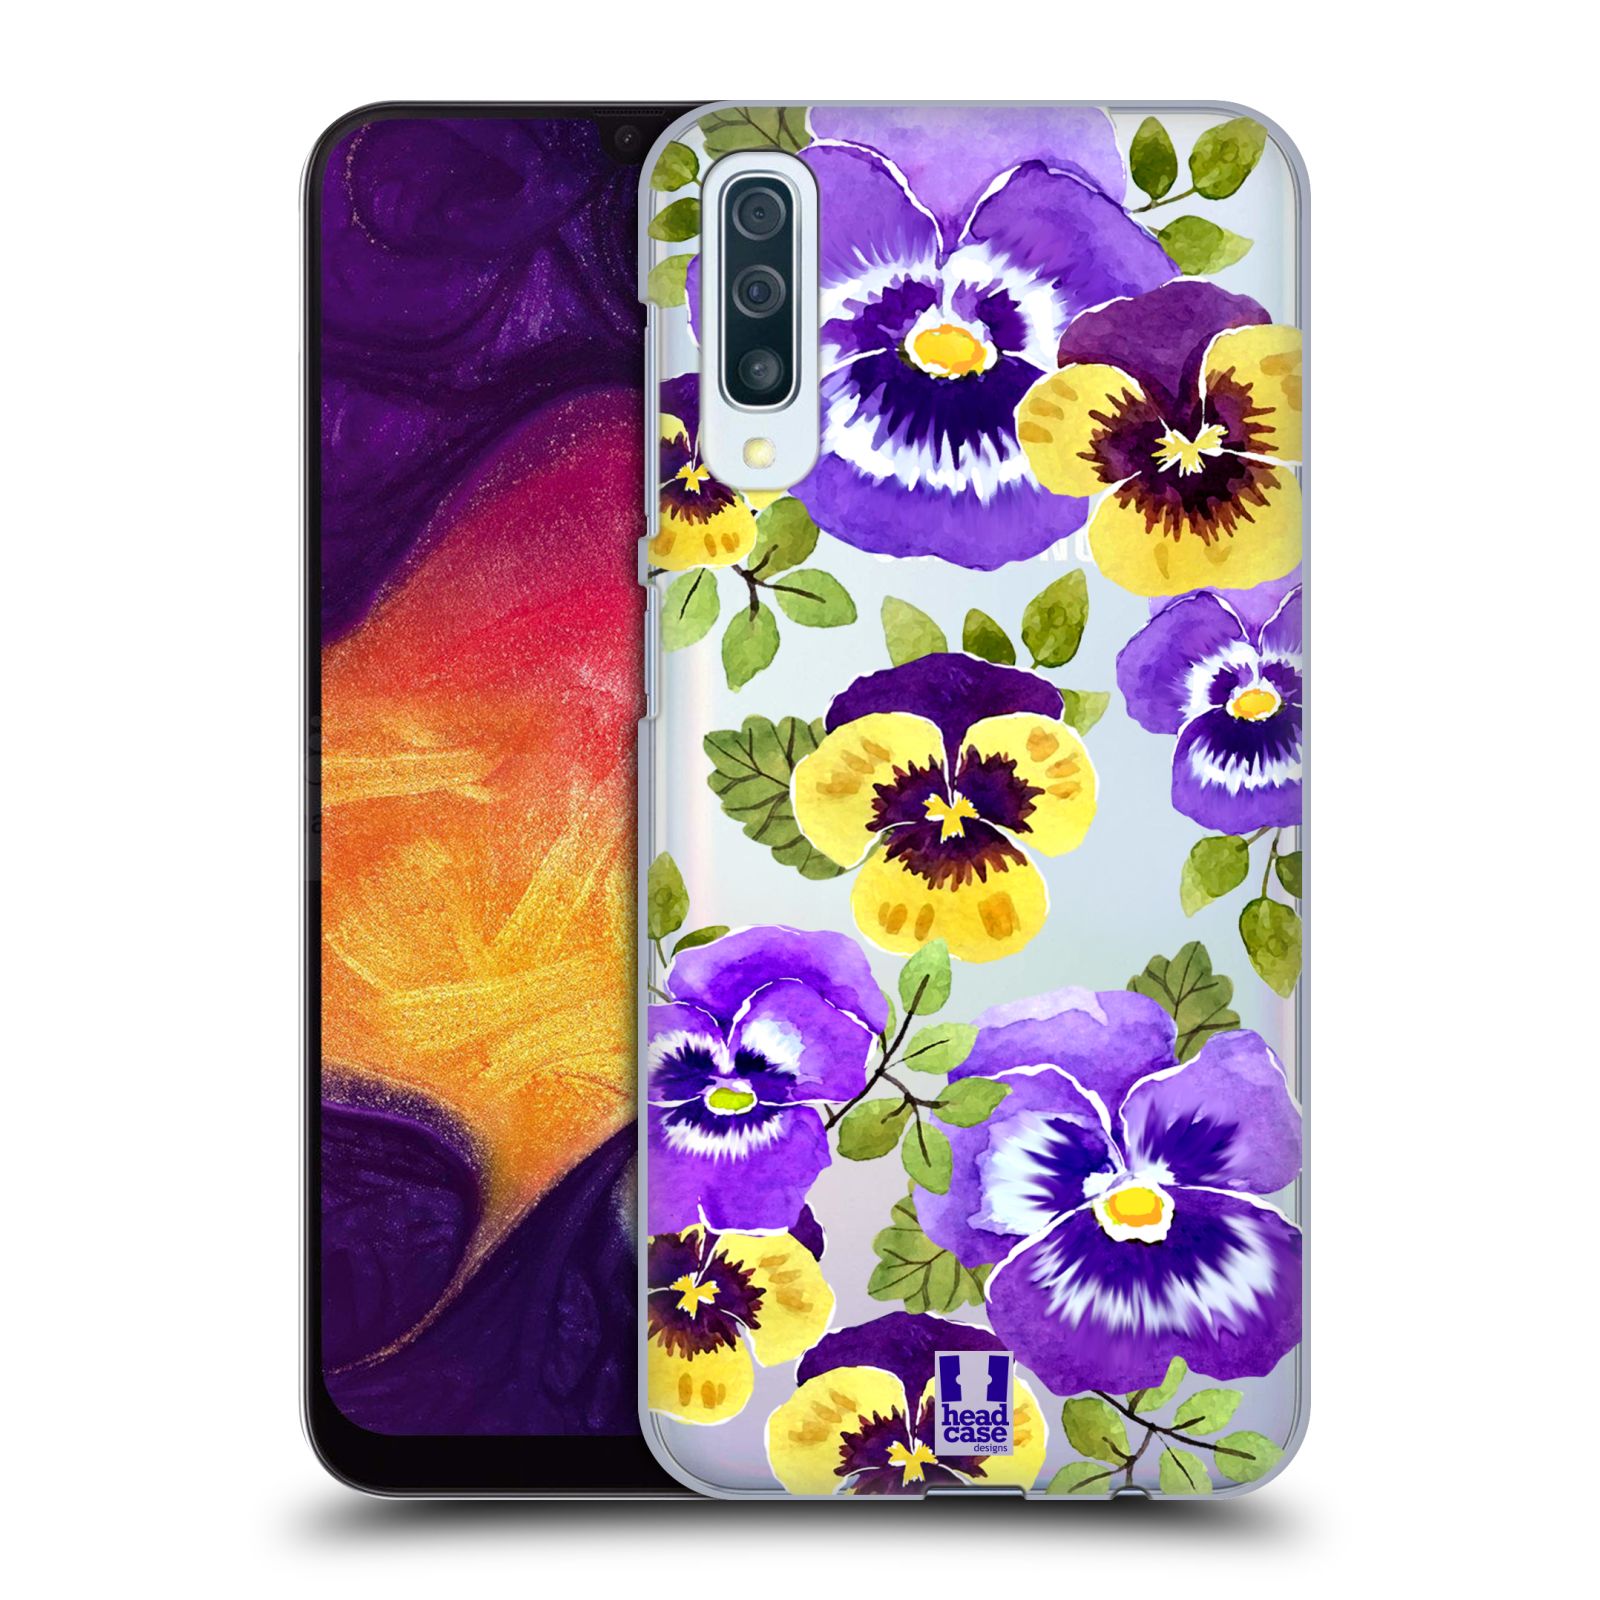 Pouzdro na mobil Samsung Galaxy A50 - HEAD CASE - Maceška fialová barva